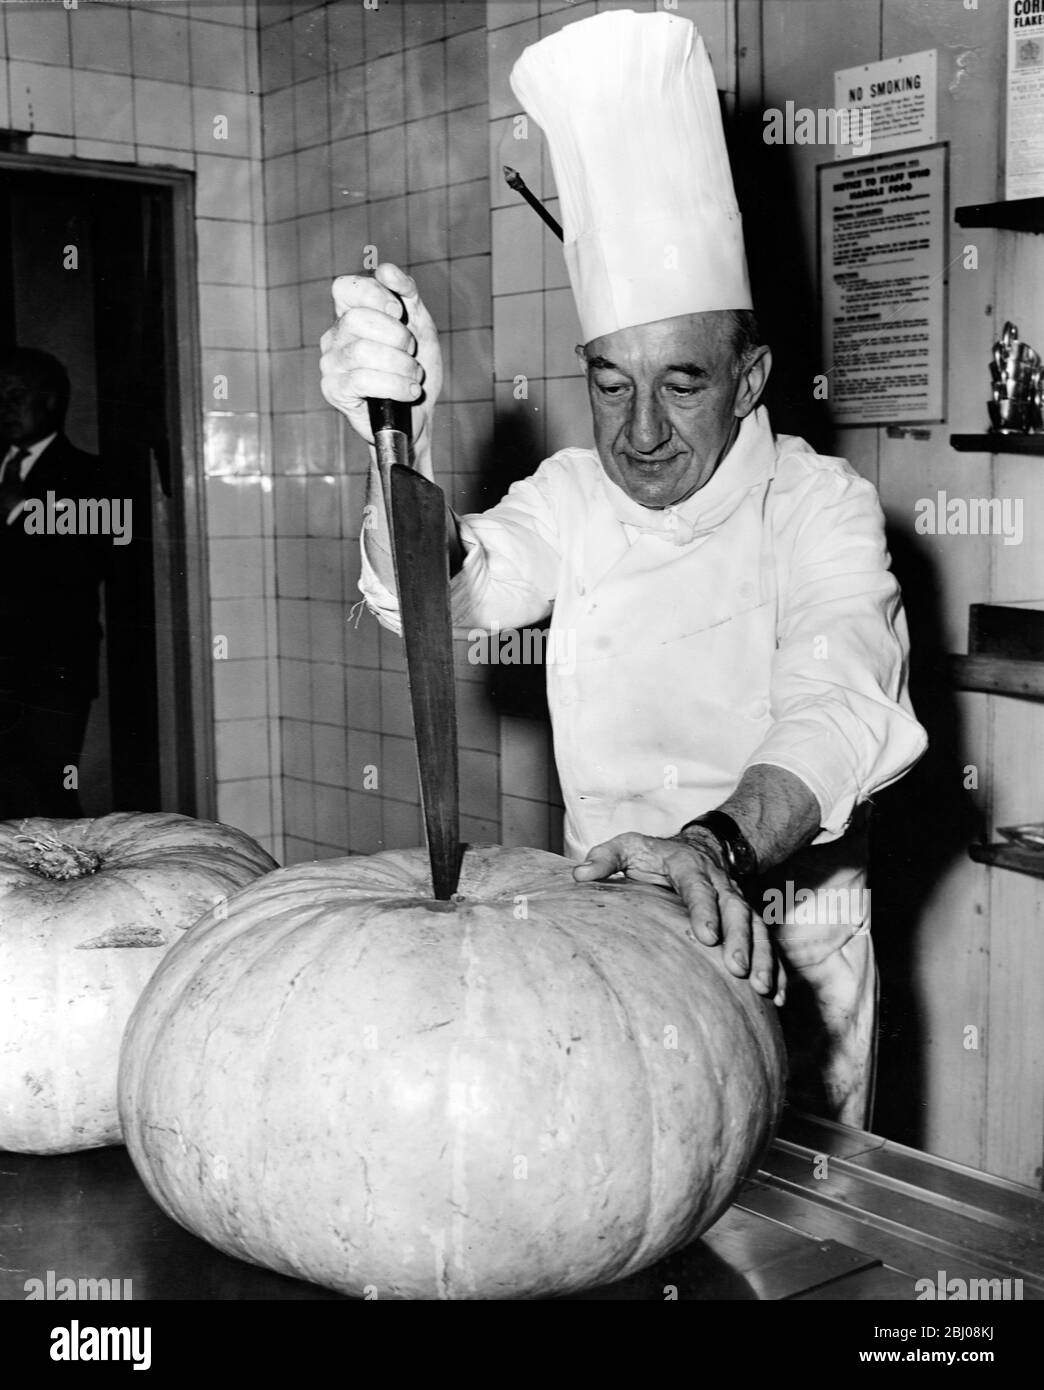 Jean Boutheney, ein französischer Koch, der in Newcastle-upon-Tyne geboren wurde, zerkleinert einen großen Kürbis, um die Kürbiskuchen vorzubereiten, die er für die Feierlichkeiten zum Thanksgiving Day in der englischsprachigen Union in London, England, machen wird. - 25. November 1959 - Stockfoto